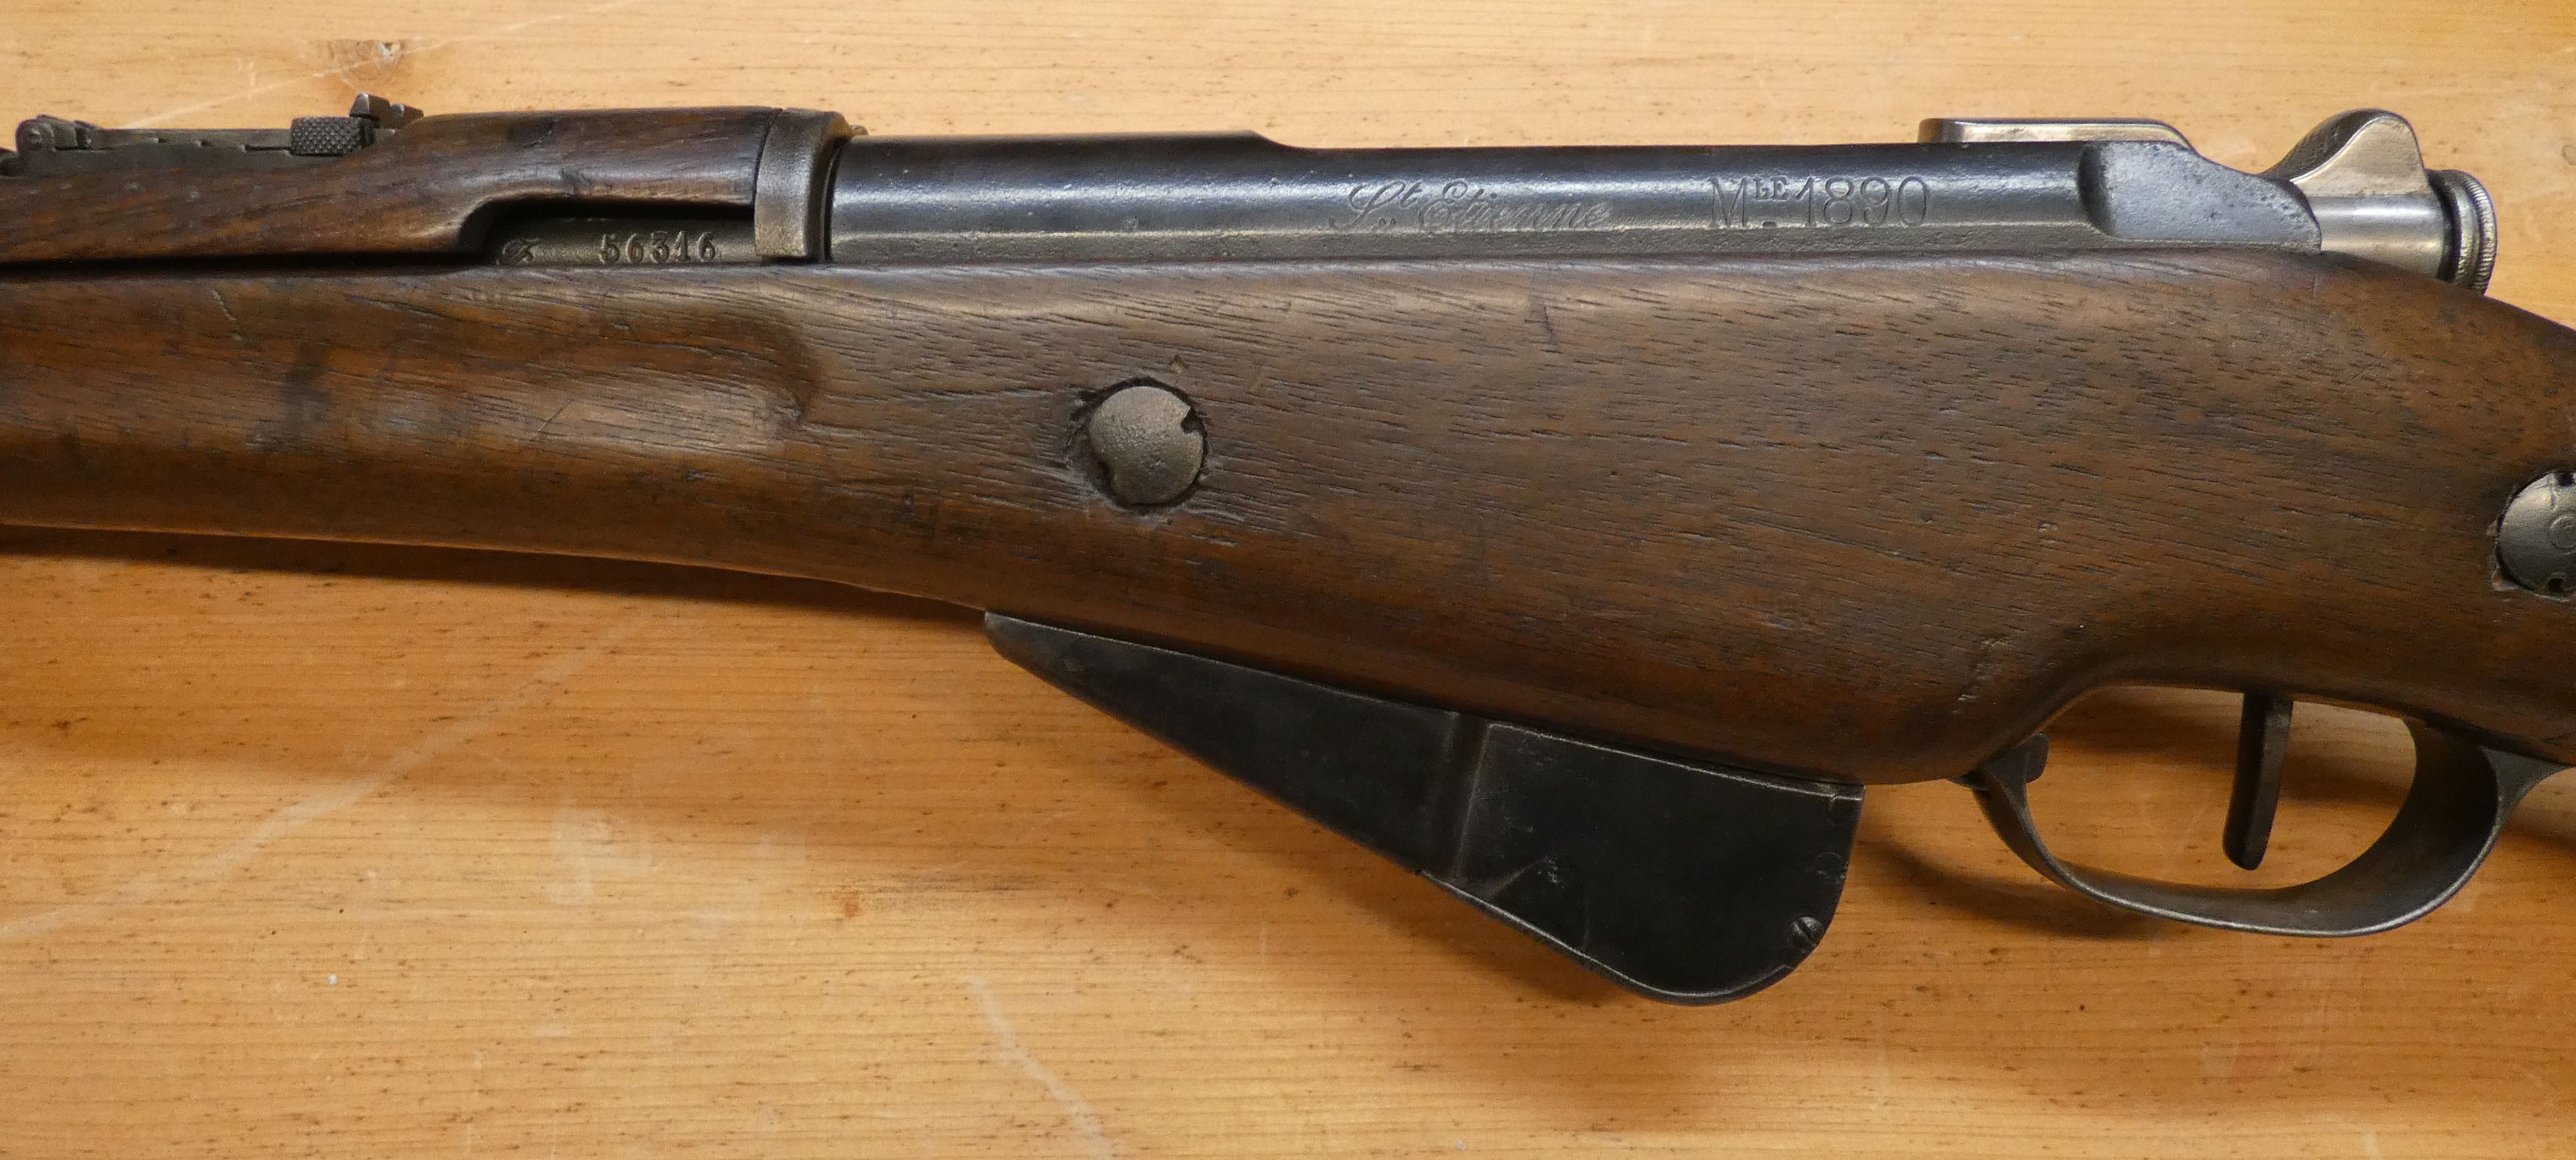 présentation d'une carabine Mle 1890 transformée 1916 22